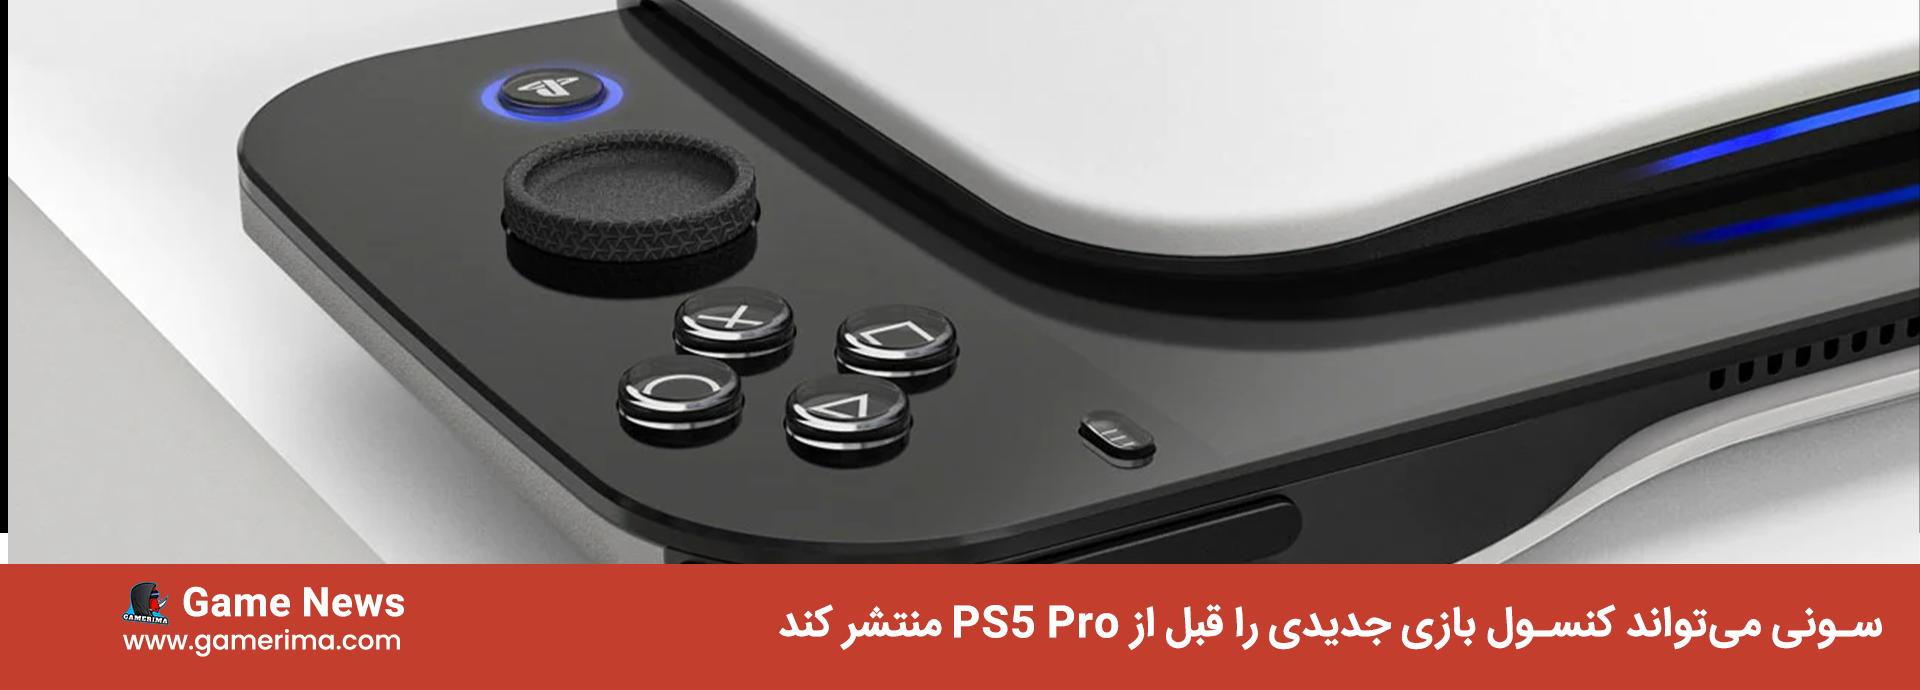 سونی می‌تواند کنسول بازی جدیدی را قبل از PS5 Pro منتشر کند